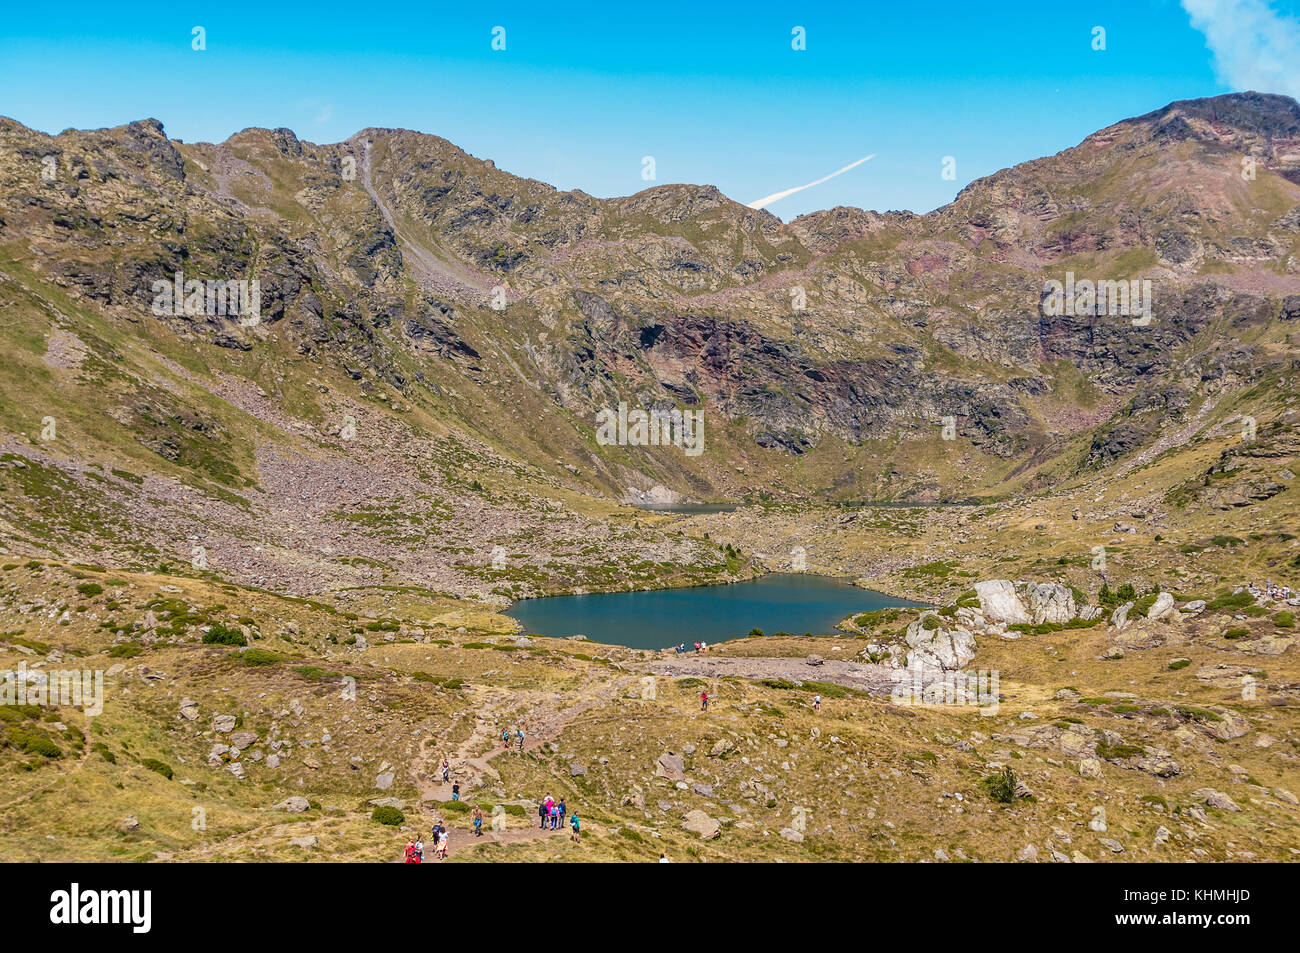 Angesichts der hohen See namens "Estany del mig' - midle See, in der Nähe von Ordino, Tristaina, Andorra Stockfoto